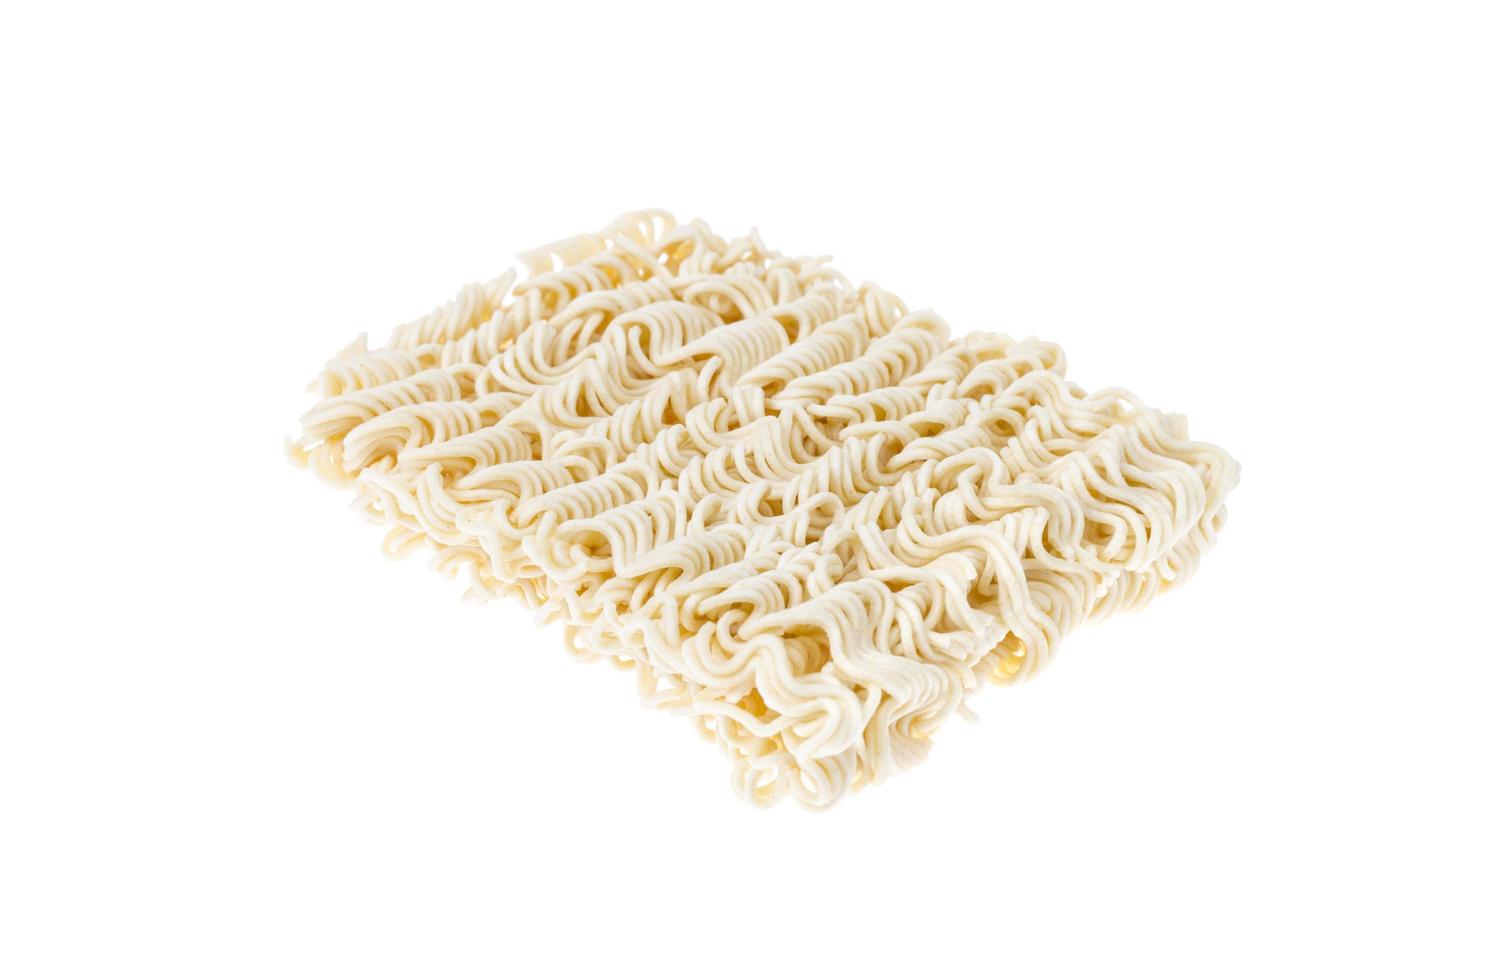 spaghetti istantanei pressati a secco isolati su sfondo bianco. foto